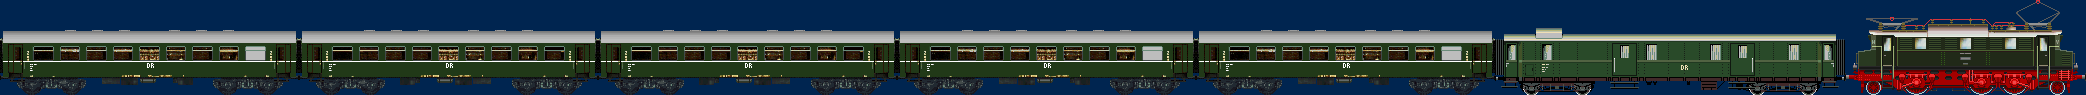 DR E04 with passenger train from Reko four axle coaches Era III und Pw4i 32